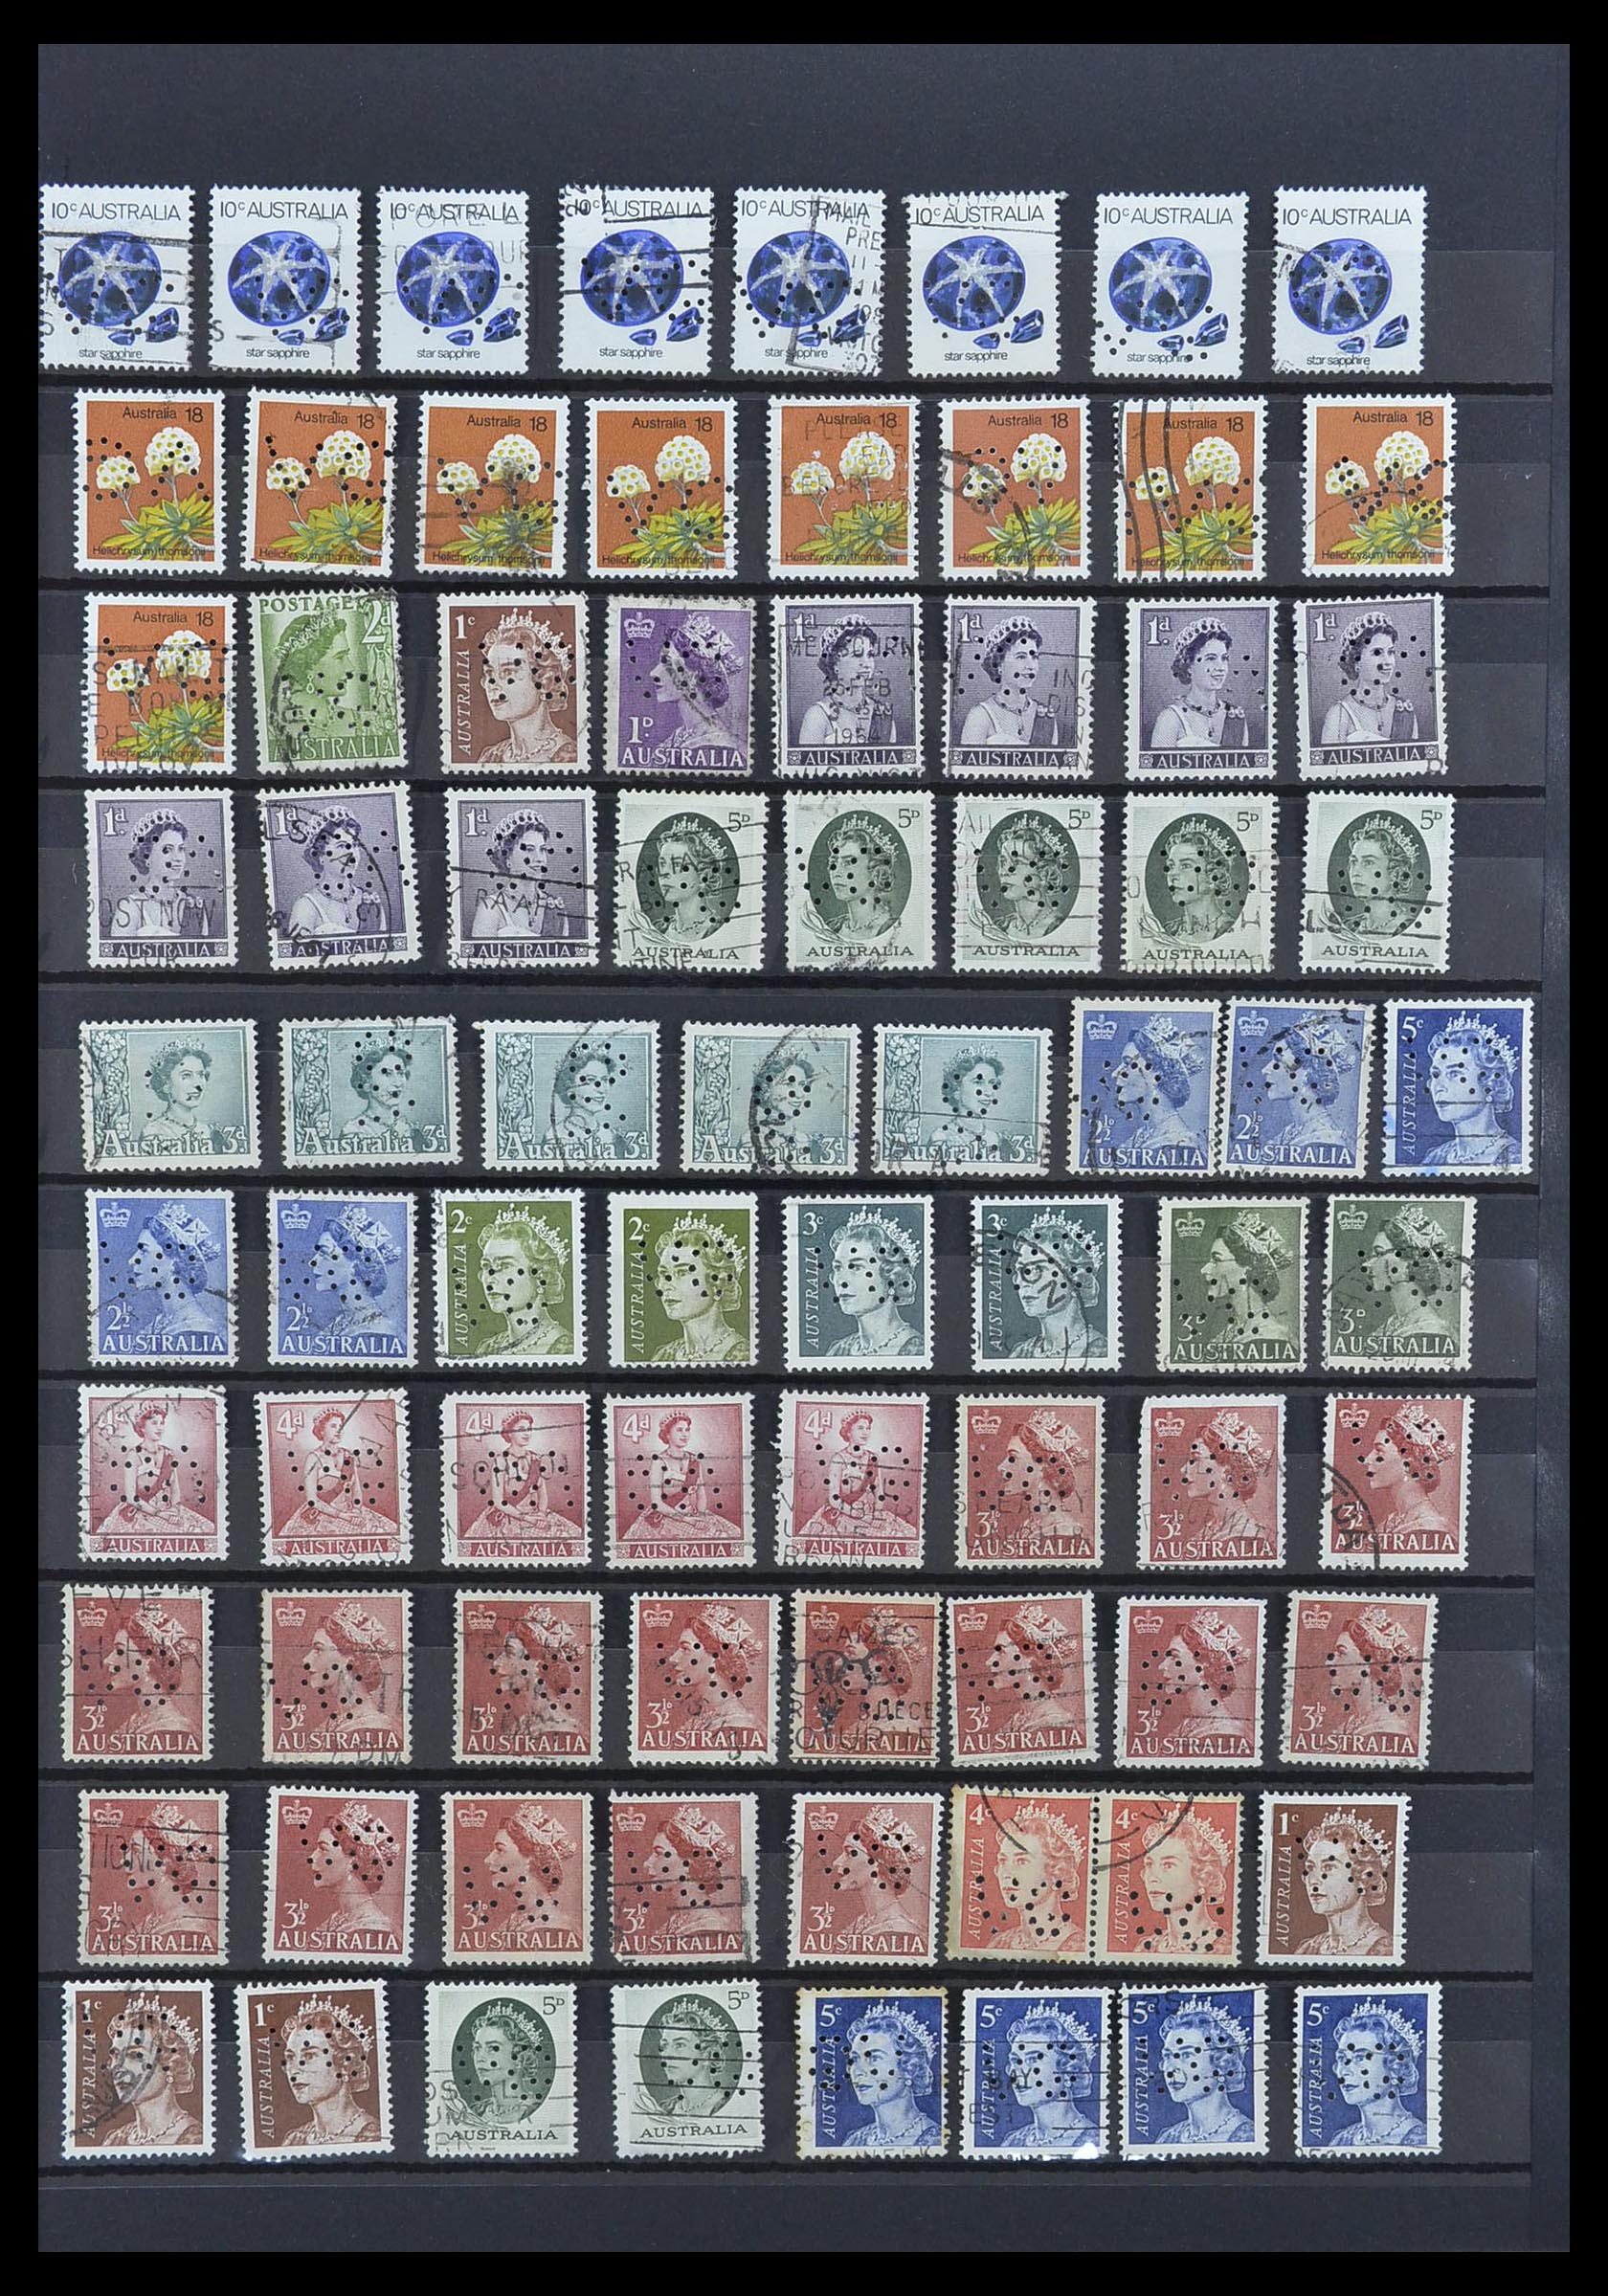 33510 003 - Postzegelverzameling 33510 Australië perfins 1900-1970.